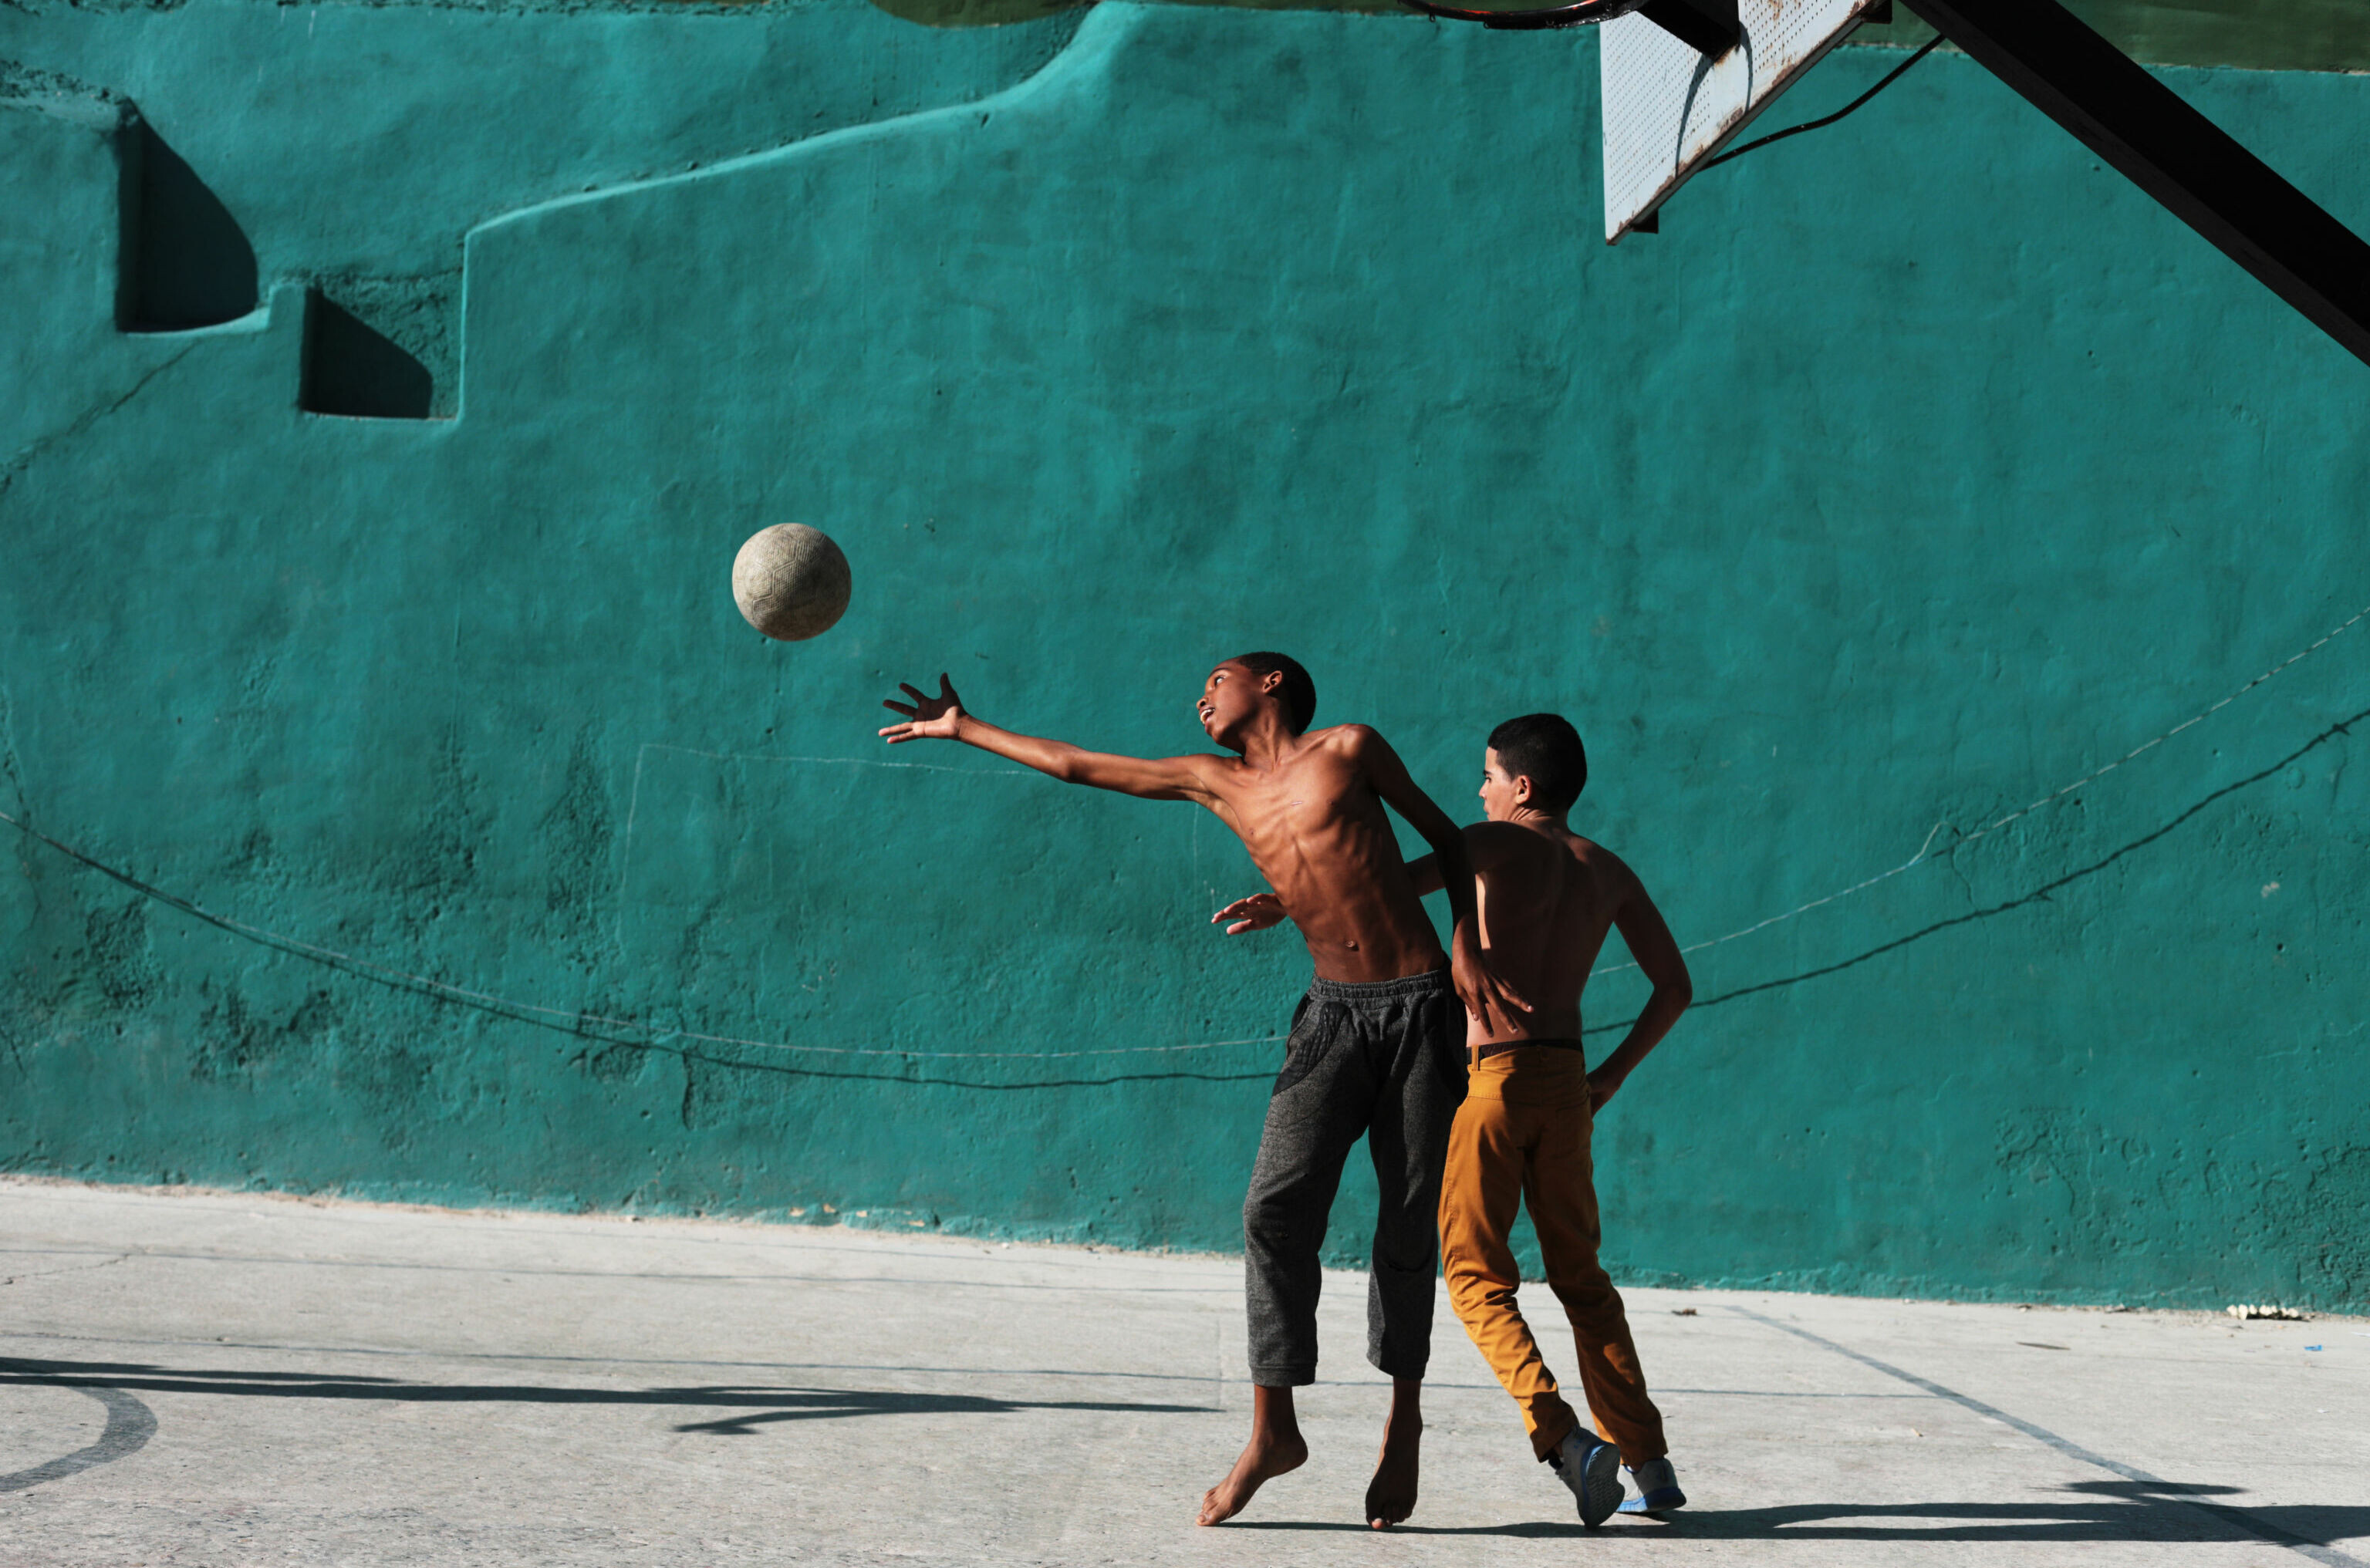 Баскетбол в Старой Гаване, Куба. Фотограф Мария Плотникова